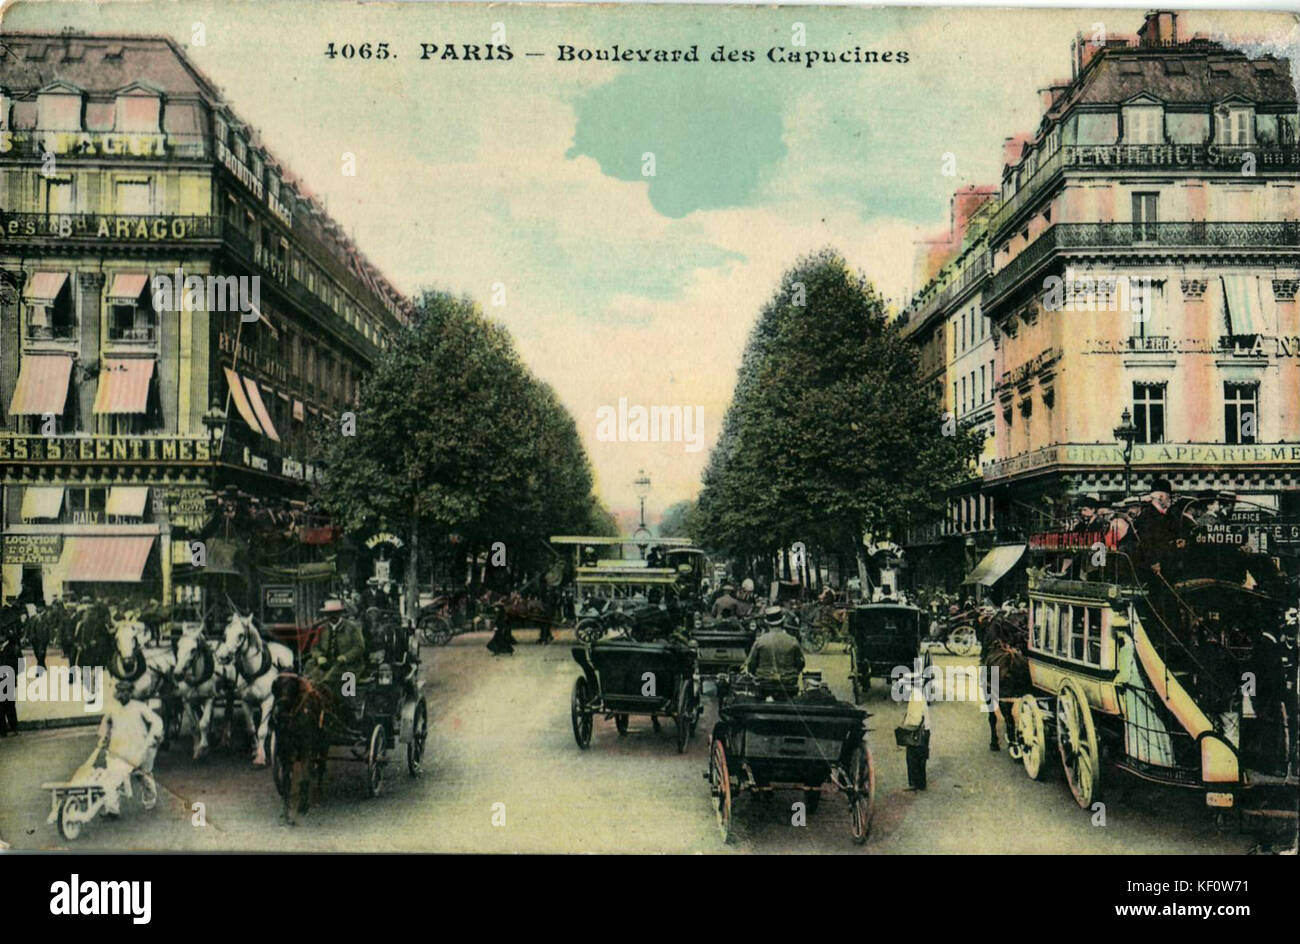 INCONNU 4065   PARIS   Boulevard des Capucines Stock Photo